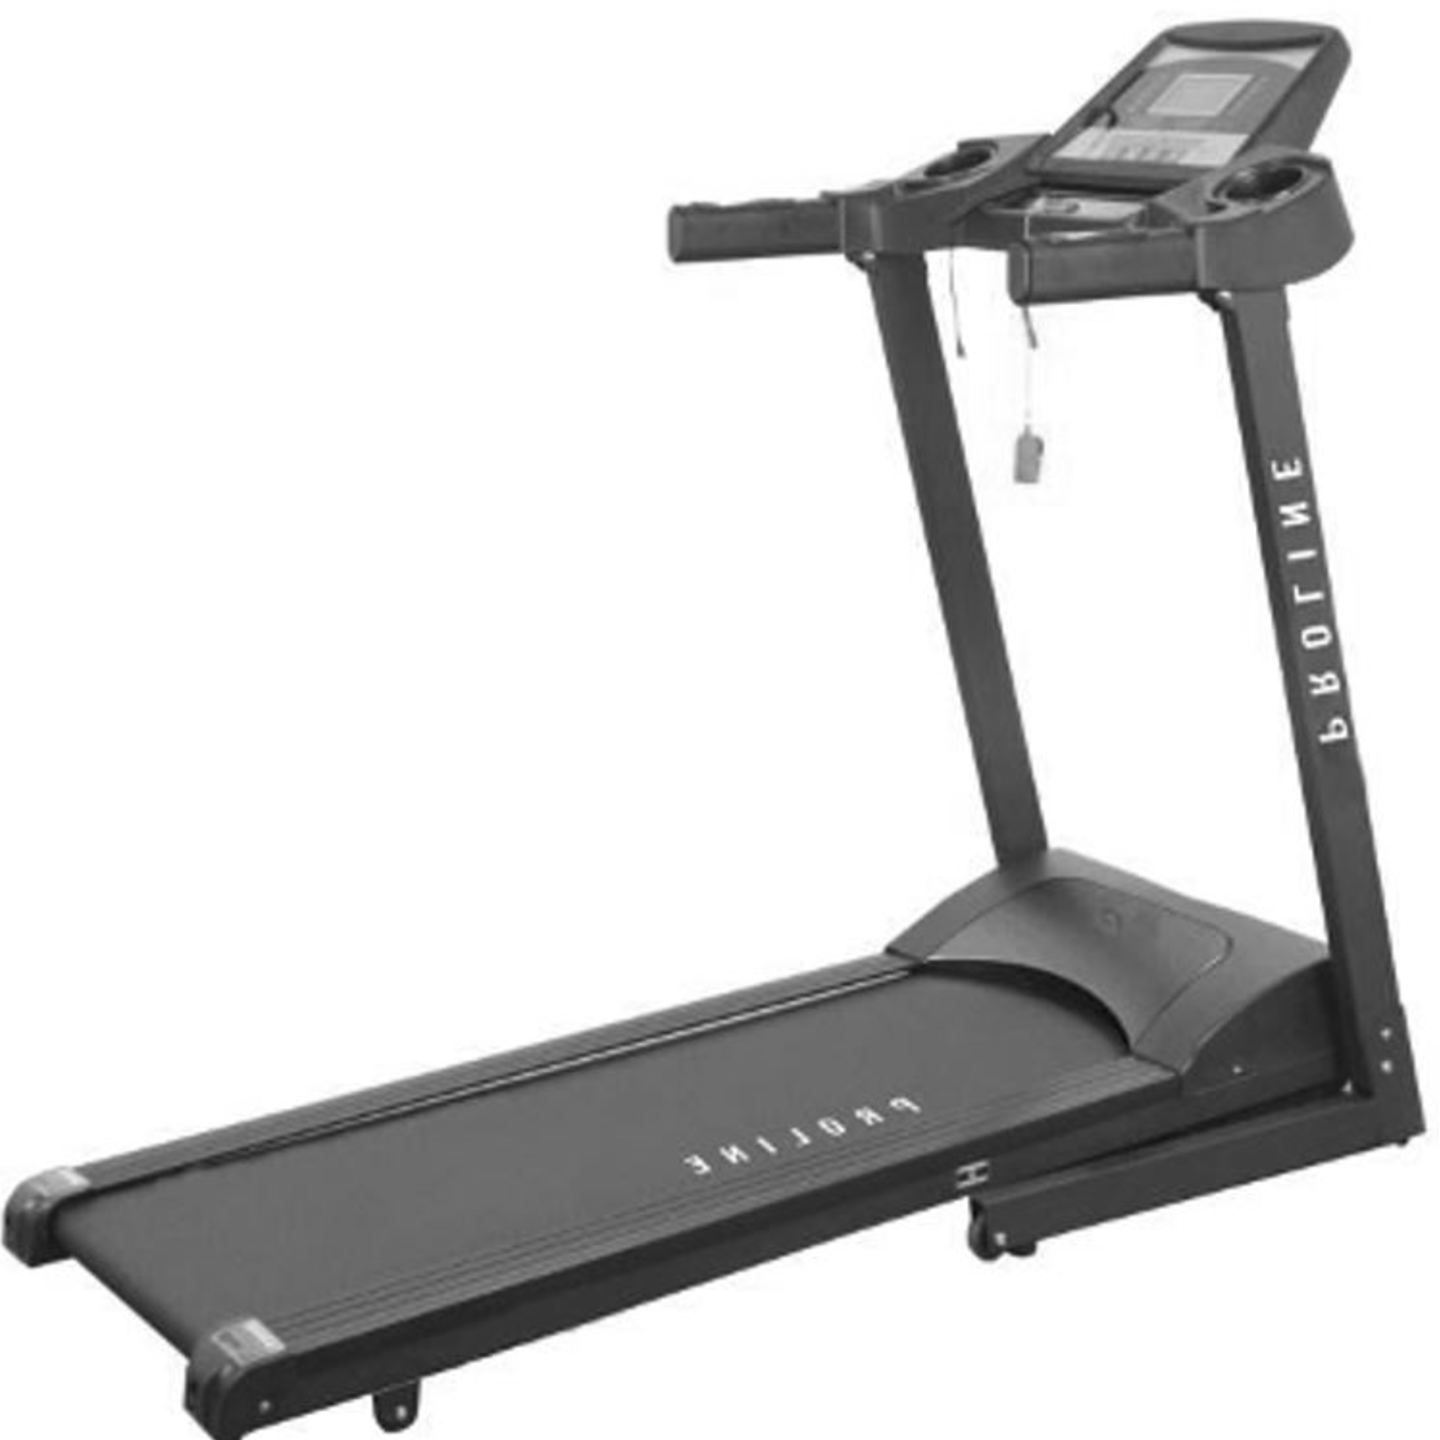 PROLINE FITNESS 64200 B Treadmill